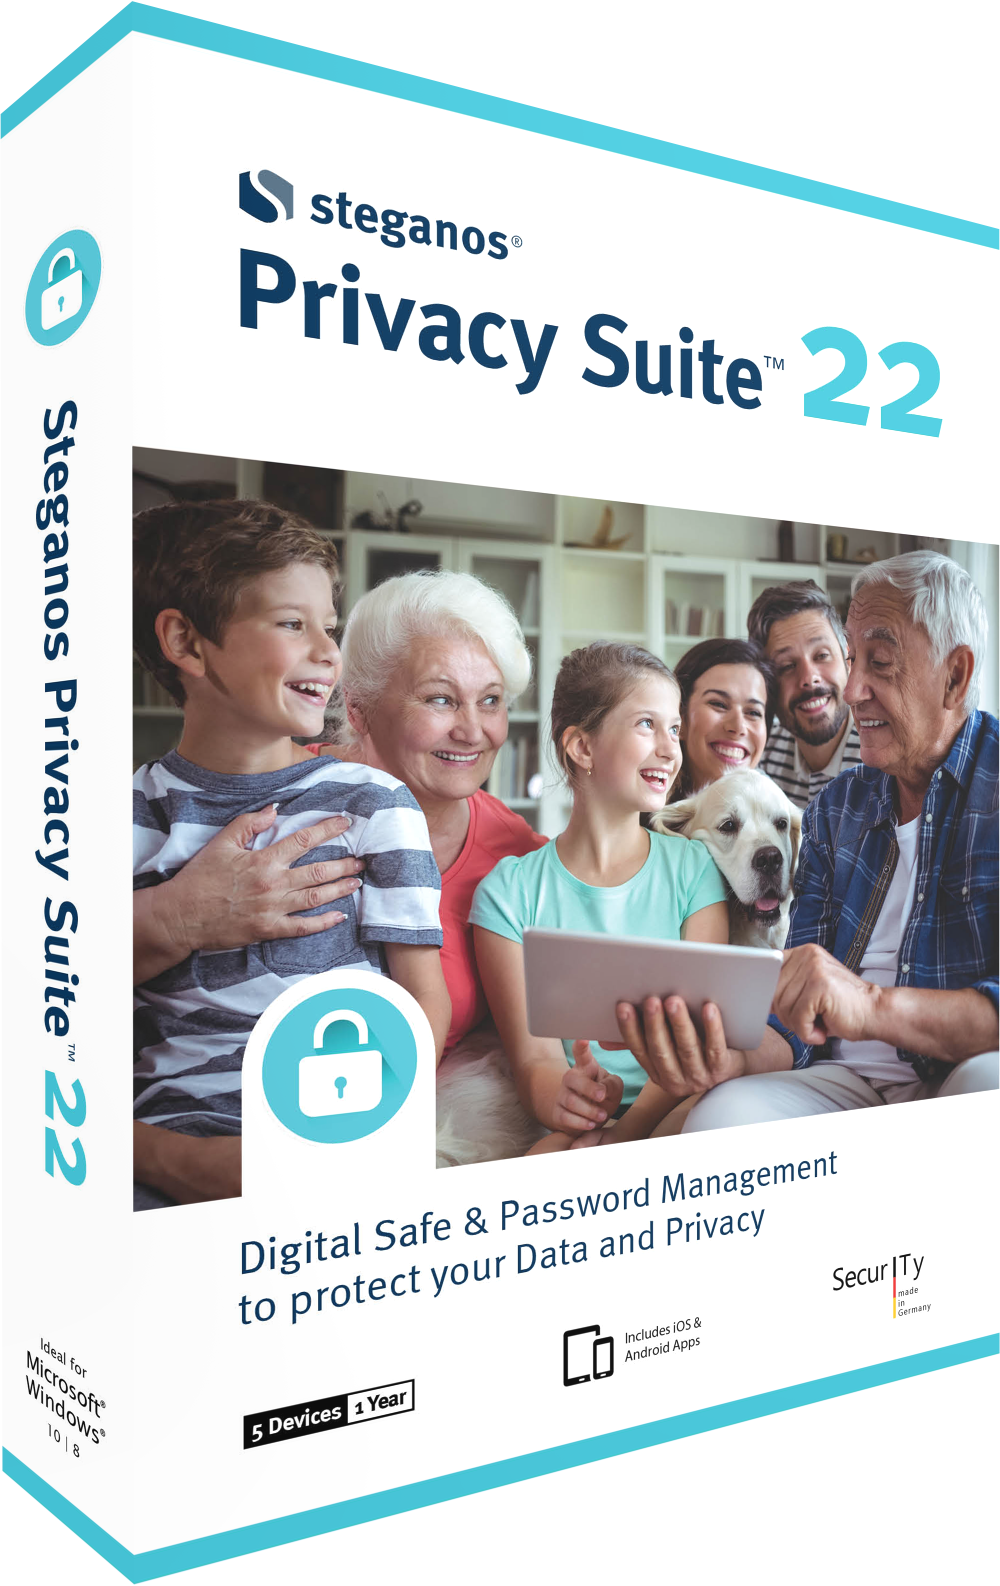 Steganos Privacy Suite 22